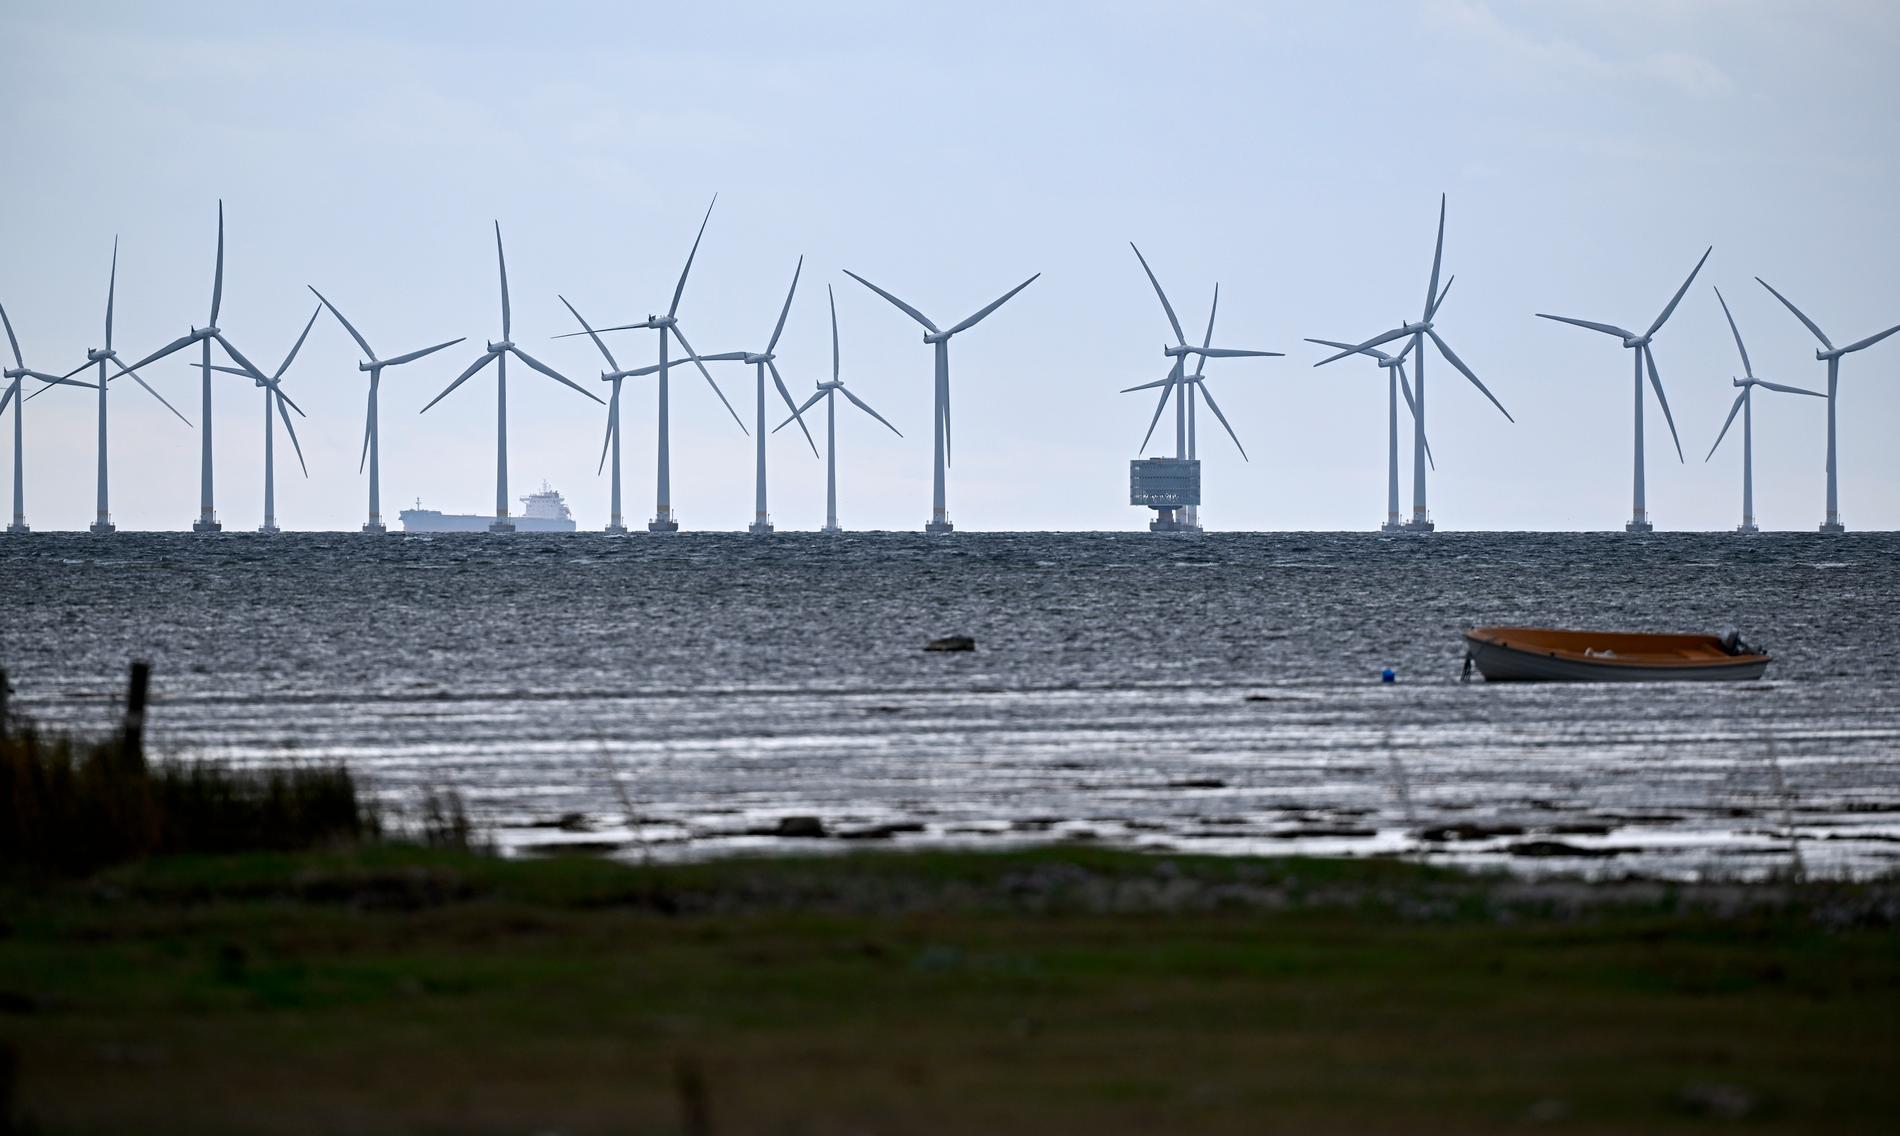 Vindkraft till havs – en vanligare syn i framtiden? Vid Lillgrund i Öresund finns i dag 48 vindkraftverk med en höjd på 115 meter. Arkivbild.